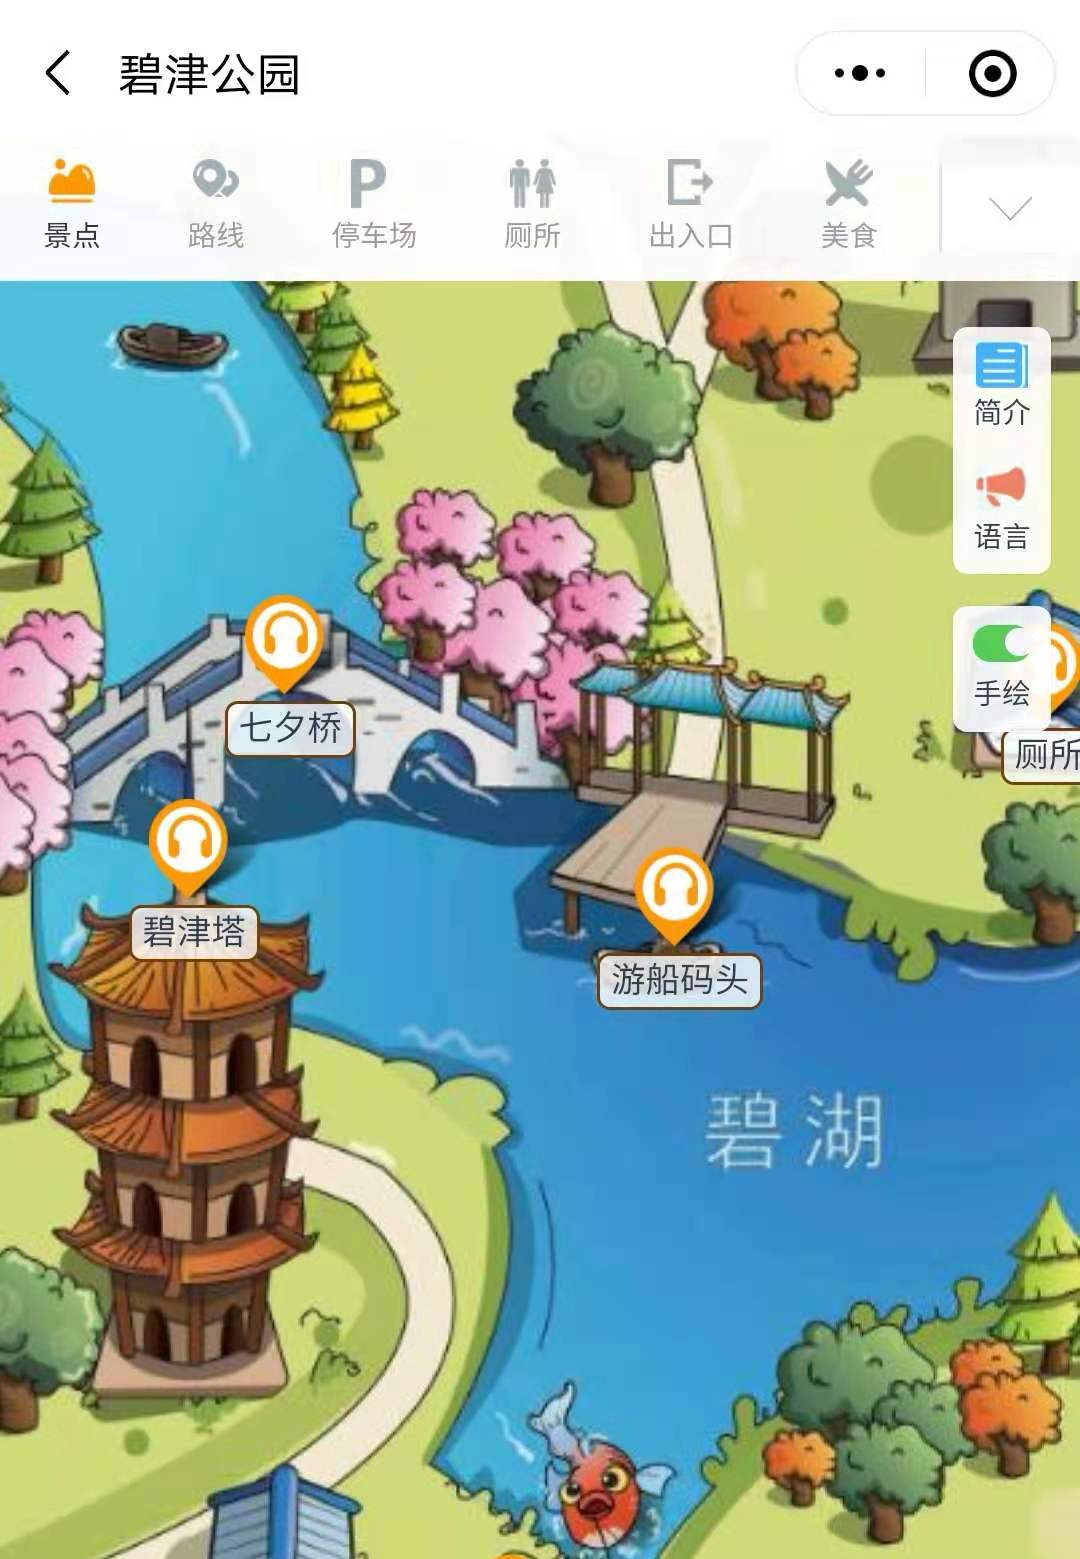 2021年国家3A景区碧津公园手绘地图，电子导览，语音讲解系统上线.jpg